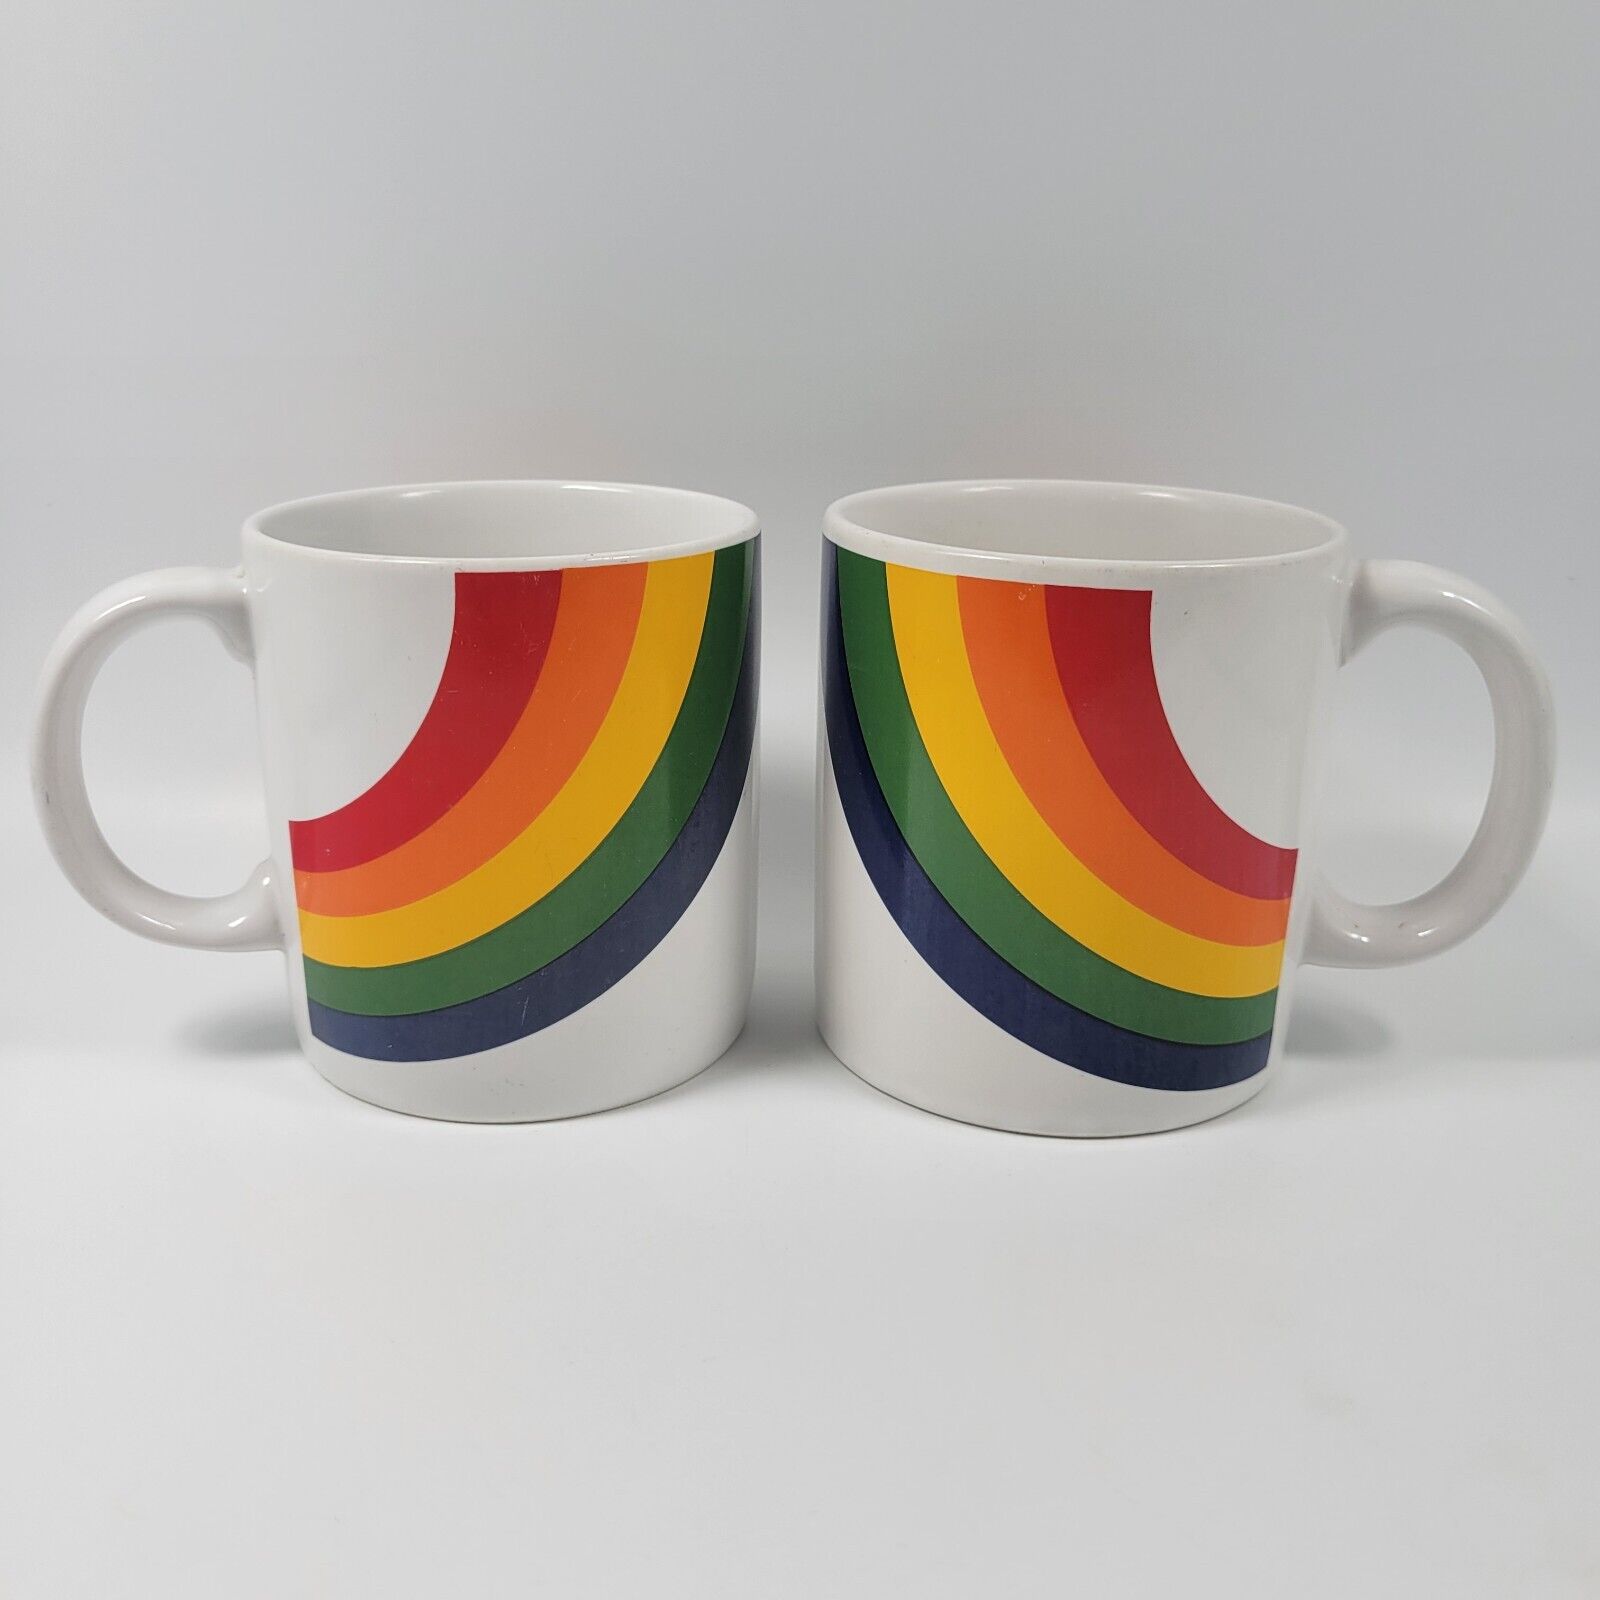 VTG FTD Rainbow 14 Oz Coffee Mug Cup Pair Lot Of 2 Stranger Things Iconic 80s